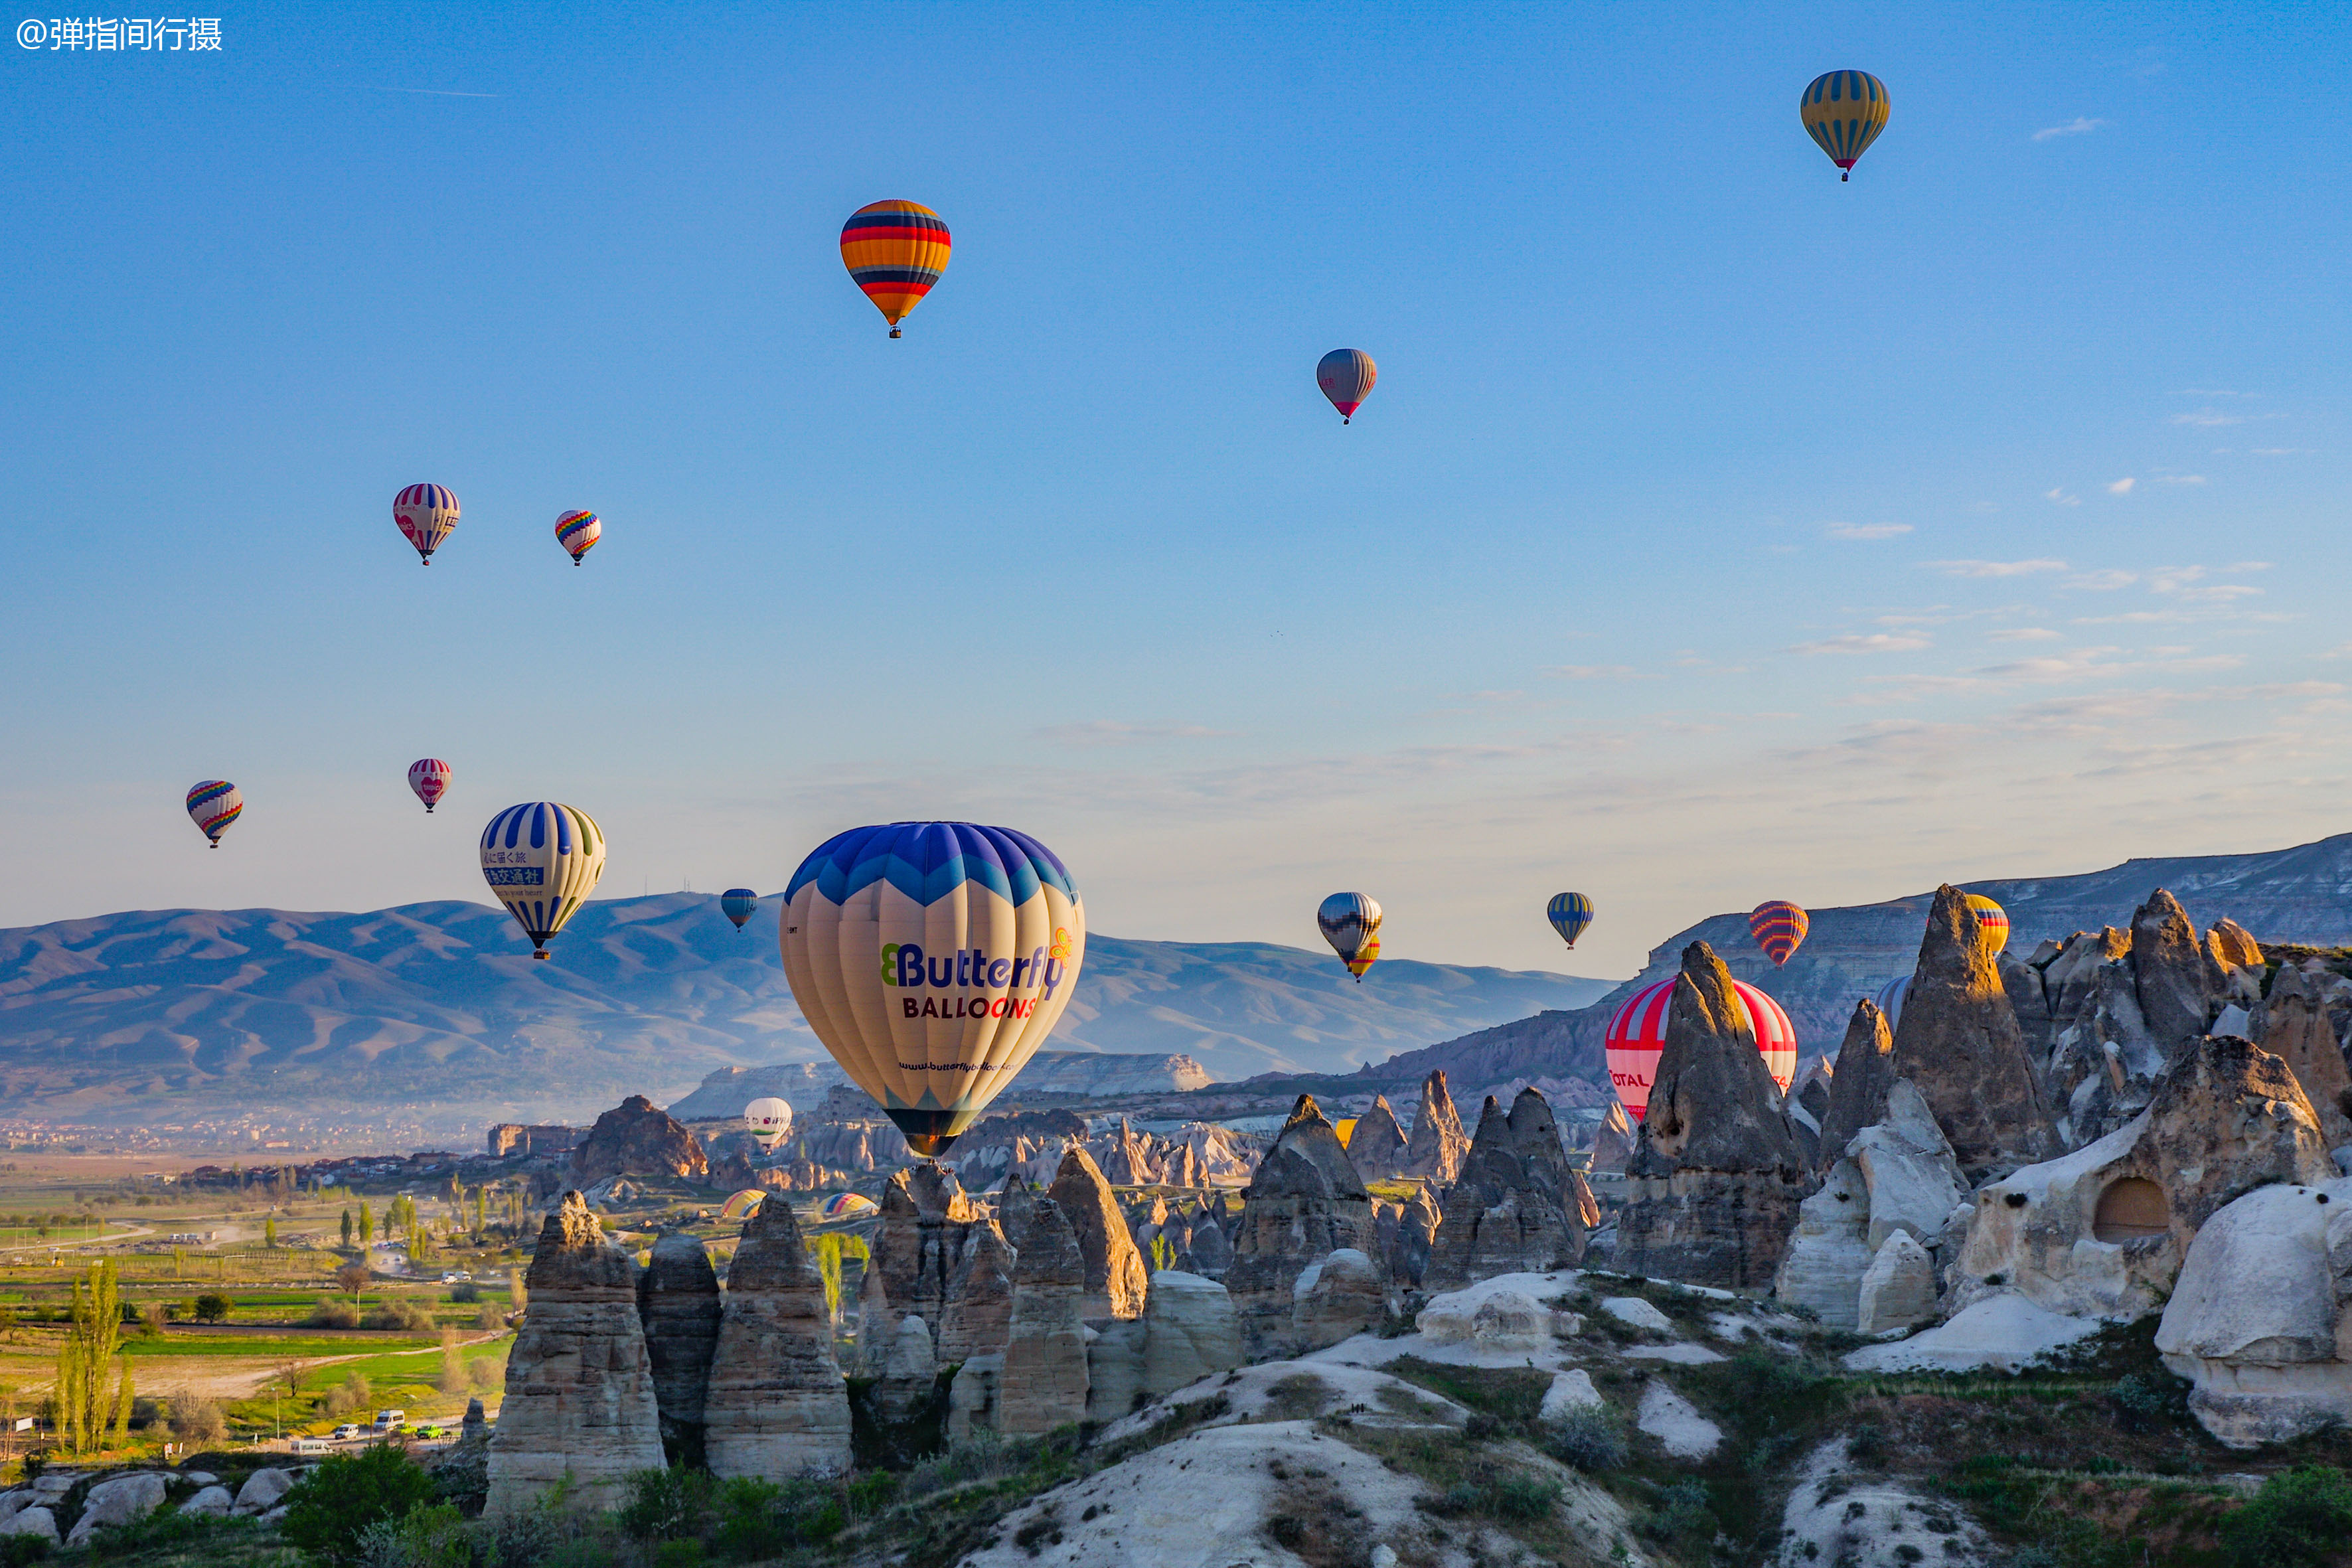 土耳其浪漫之旅,乘坐热气球俯瞰"旷世奇景",美如"人间